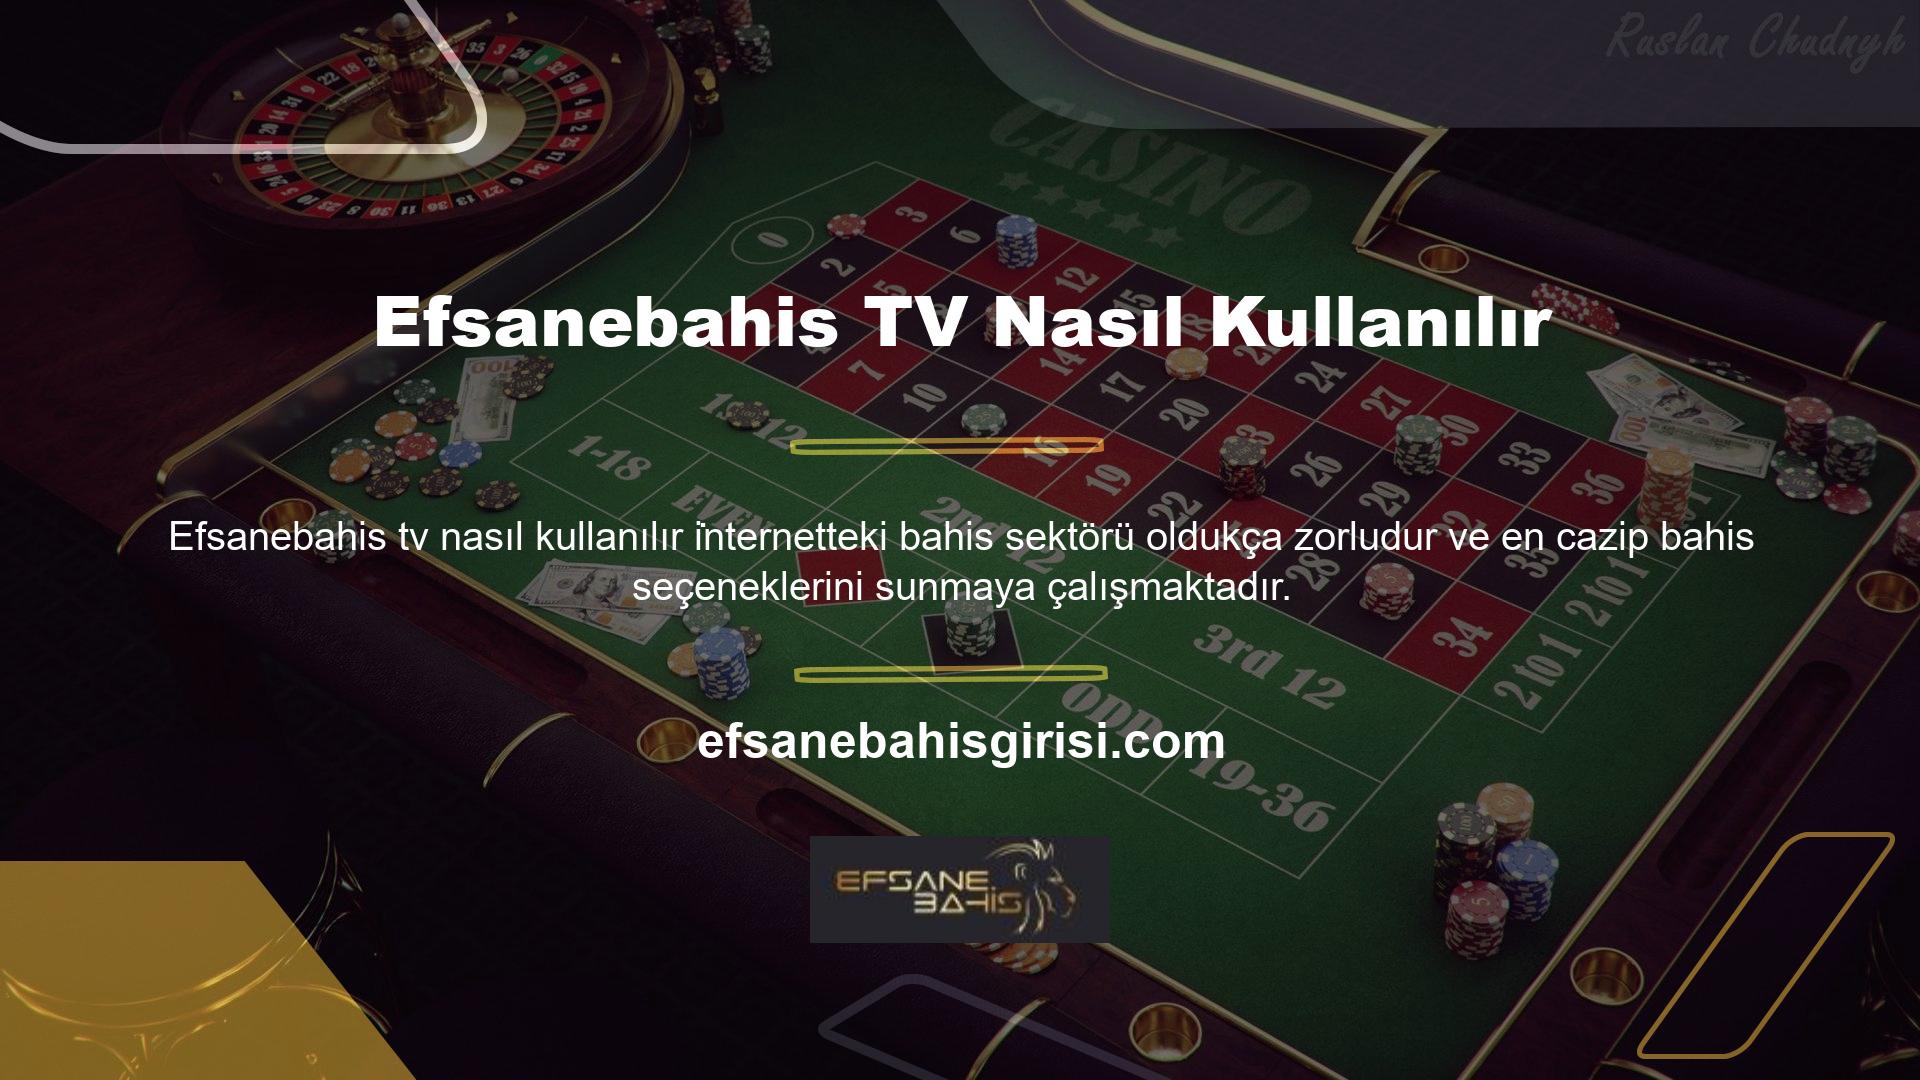 Efsanebahis Bahis, tüm oyuncular için canlı bahis, canlı casino, video slot ve bingo dahil olmak üzere çeşitli bahis seçenekleri sunar